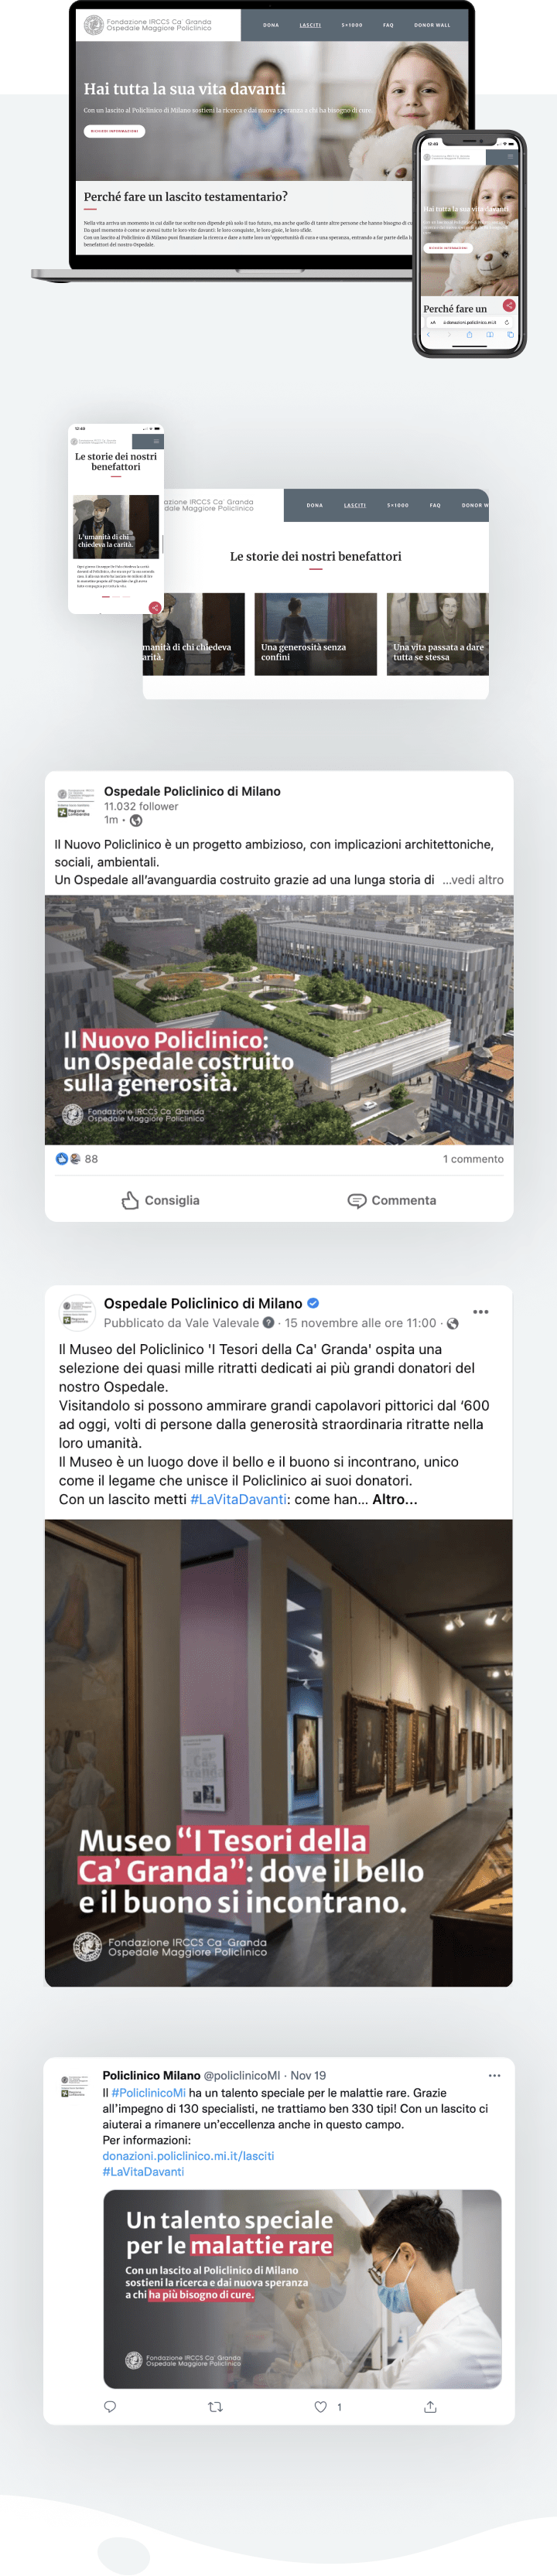 Mockup bequests Lasciti Policlinico di Milano